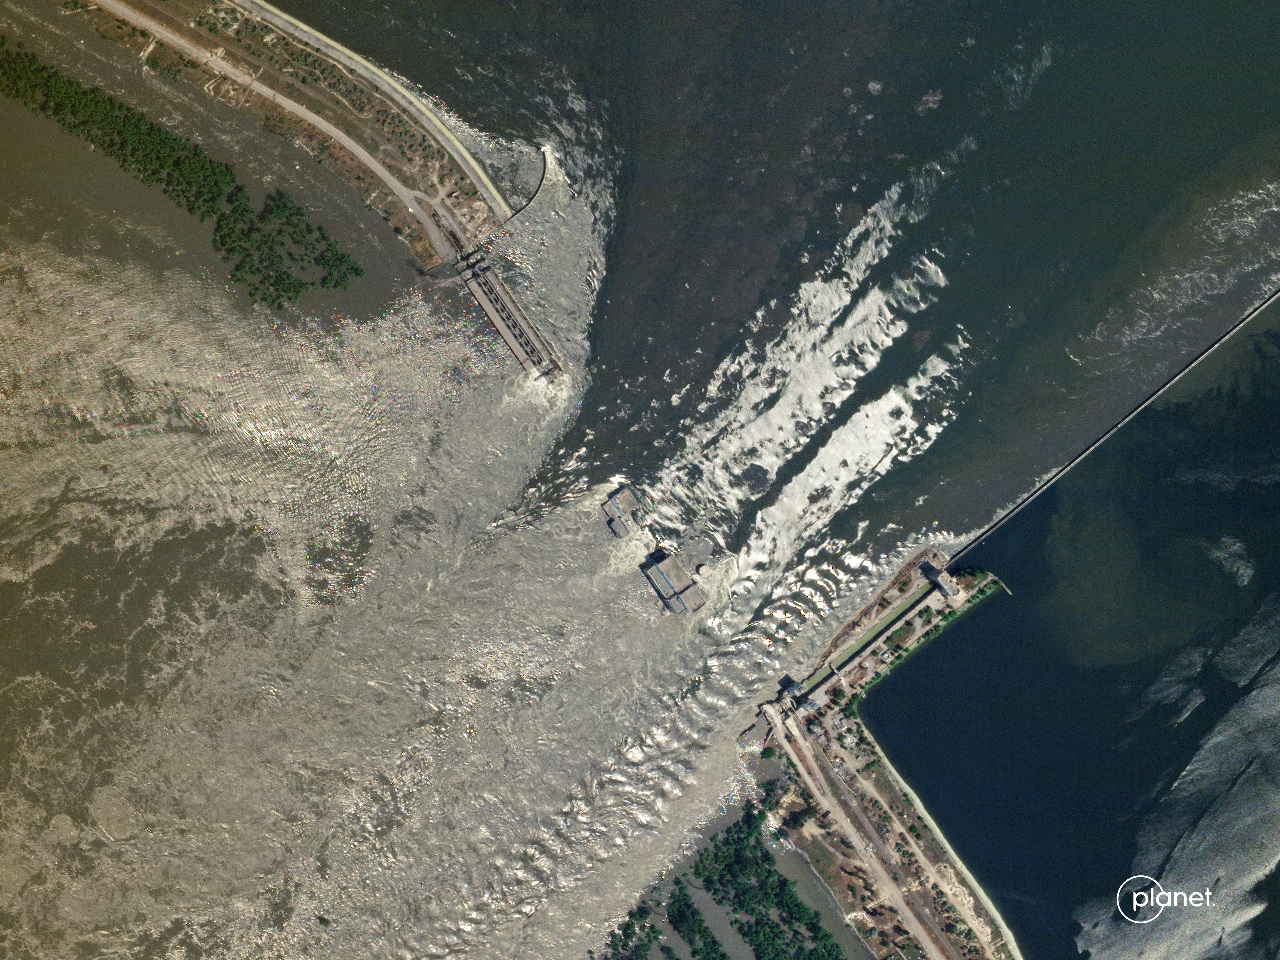 澤倫斯基：烏南水壩遭破壞 等同毀滅性環境炸彈